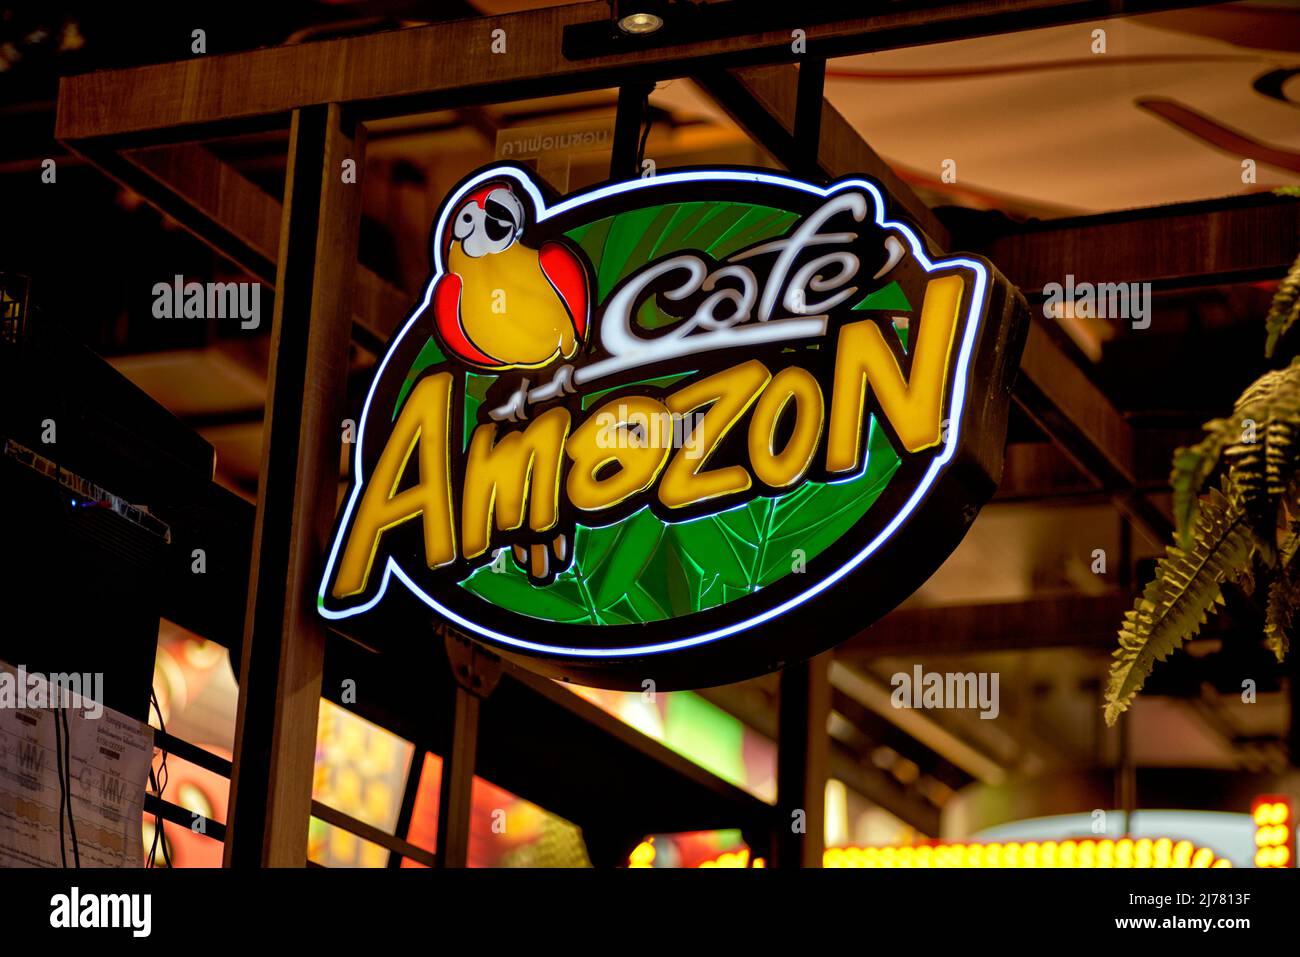 Cartel de la cafetería Cafe Amazon Foto de stock